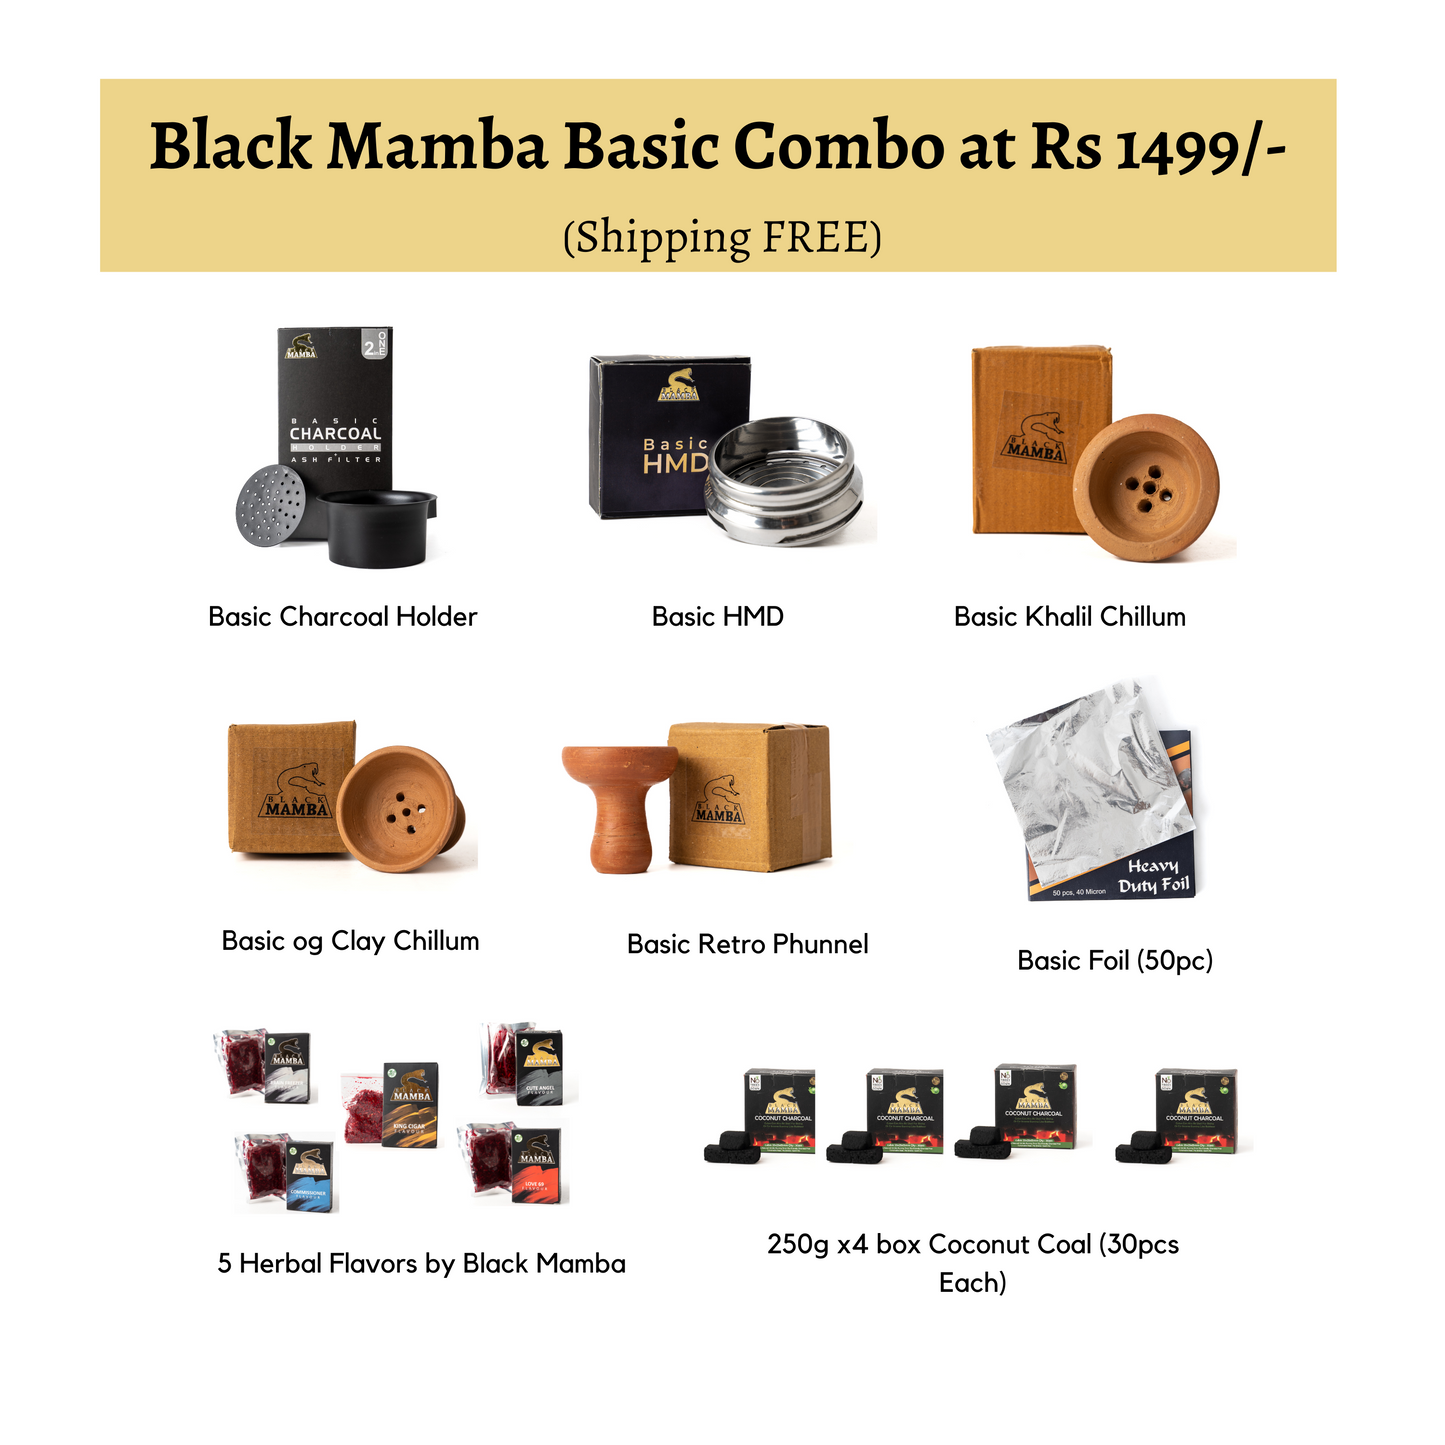 Black Mamba Basic Combo at Rs 1499/- (Shipping FREE)